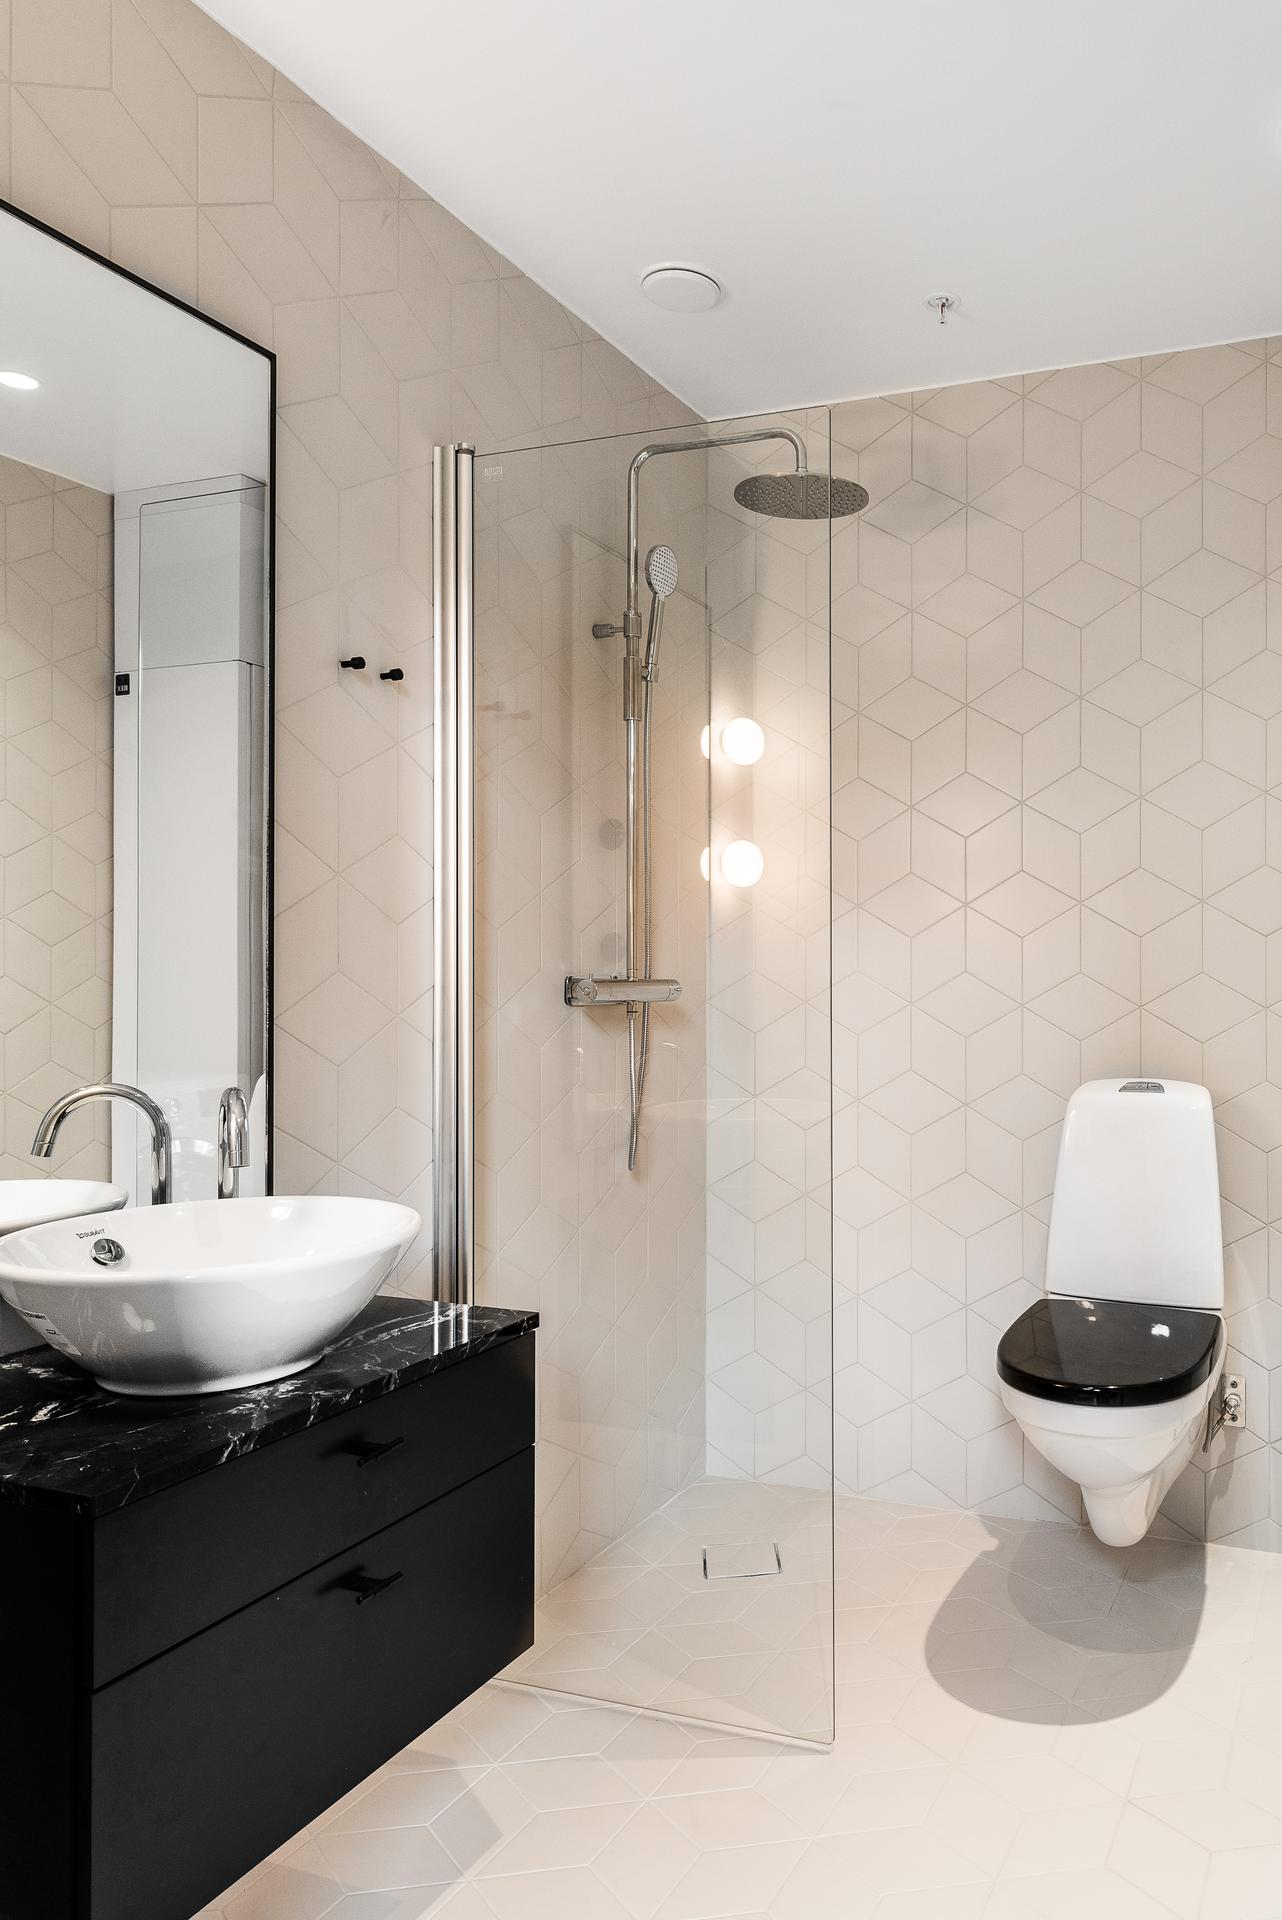 salle de bain beige et noire décoration design